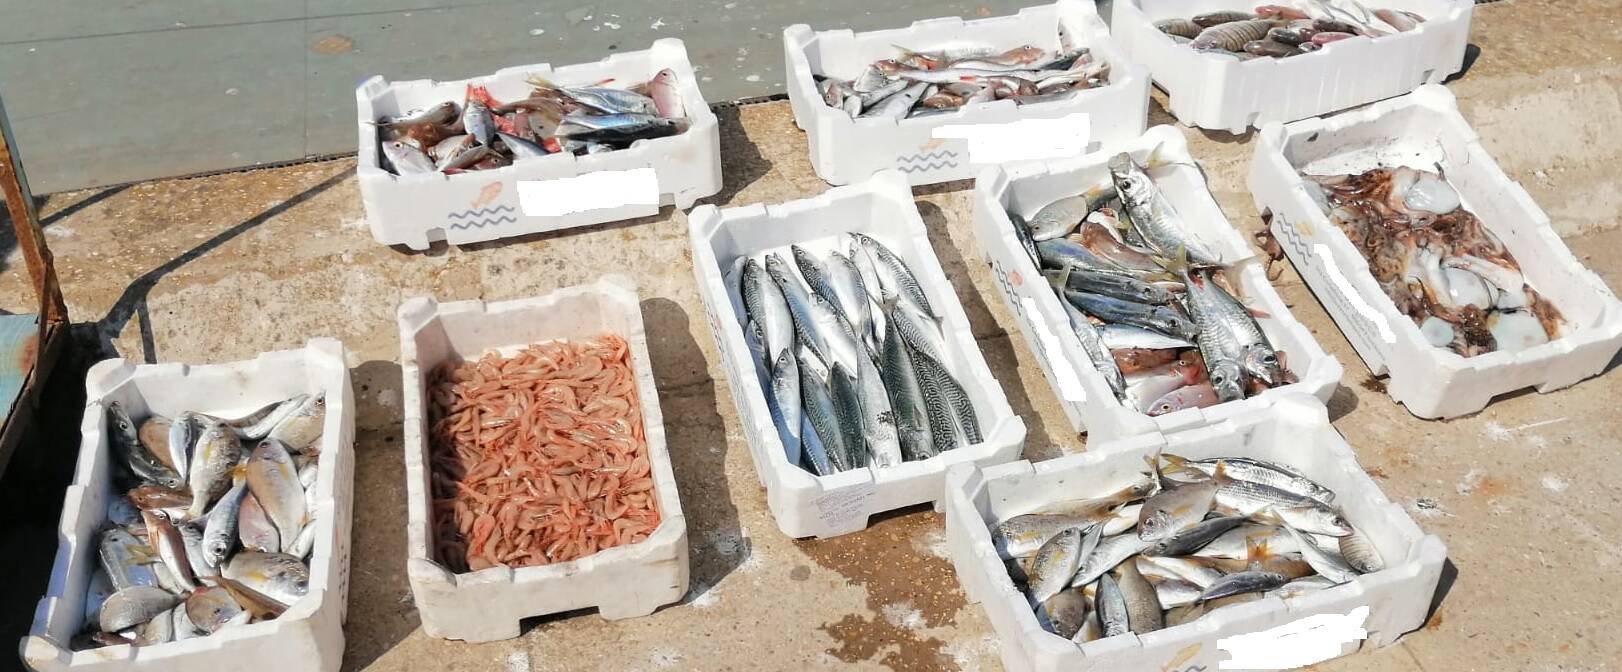 Fiumicino, vendono pesce non tracciato: maxi sequestro al porto canale